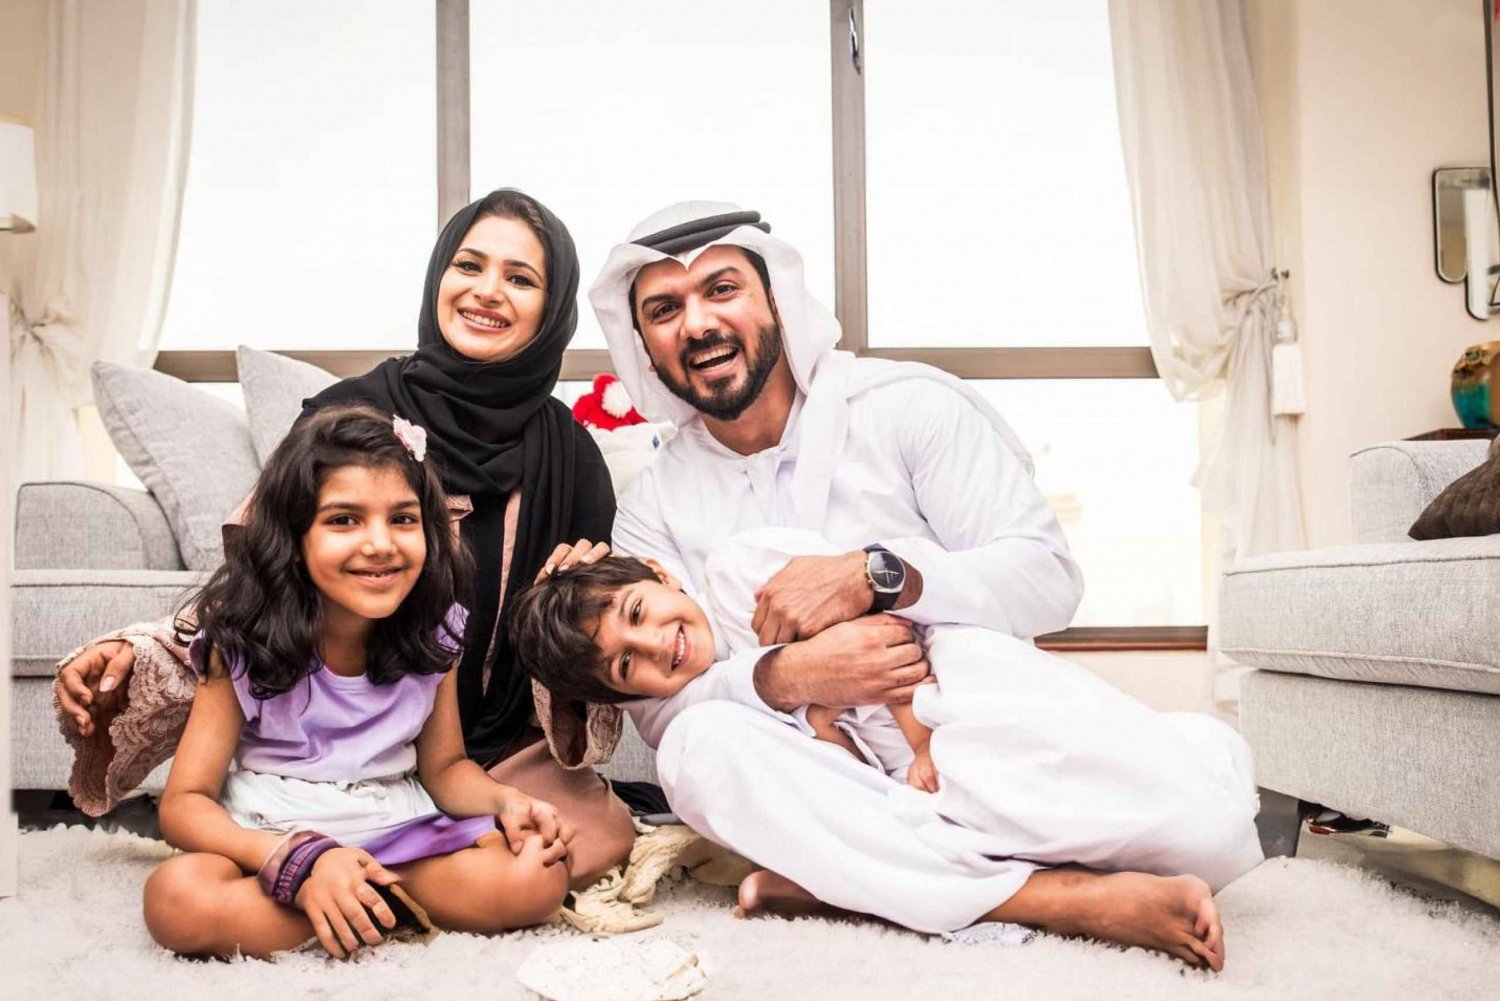 visita da família saudita